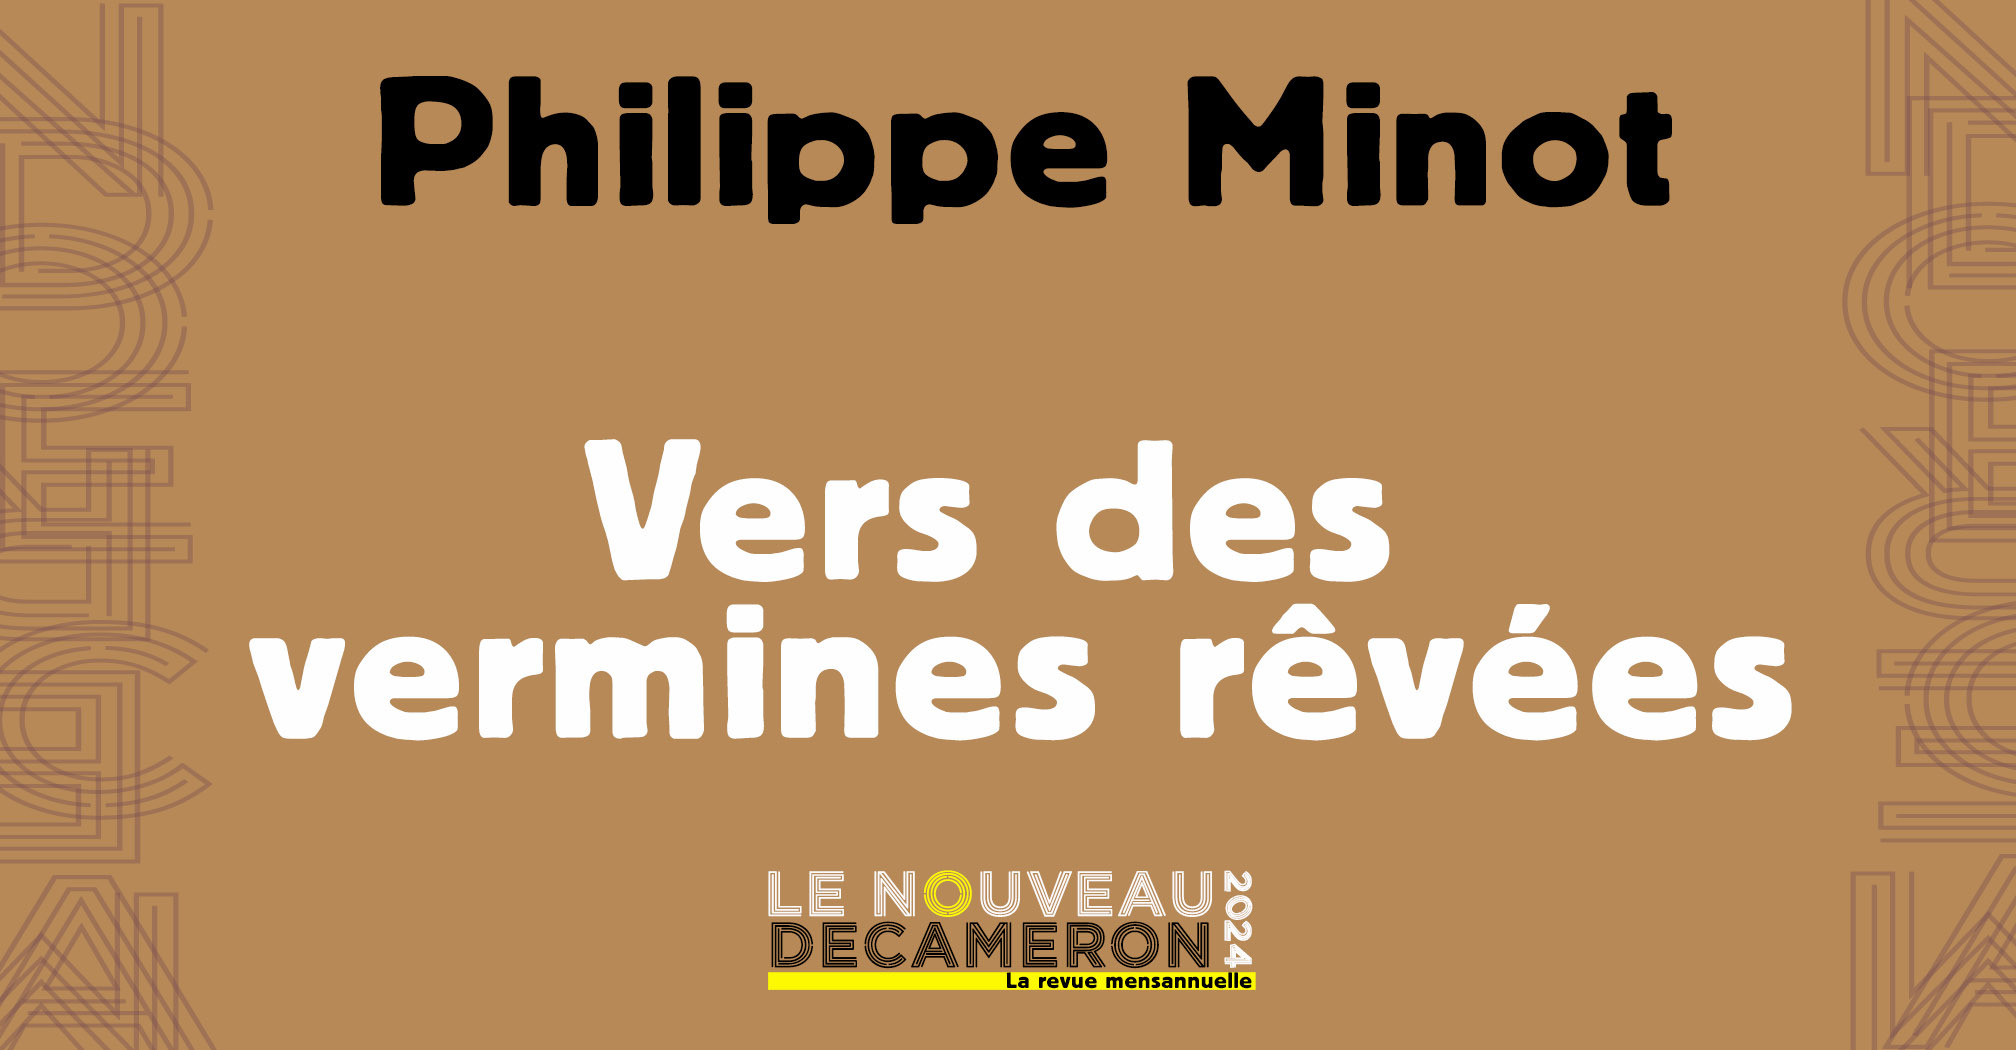 Philippe Minot - Vers des vermines rêvées